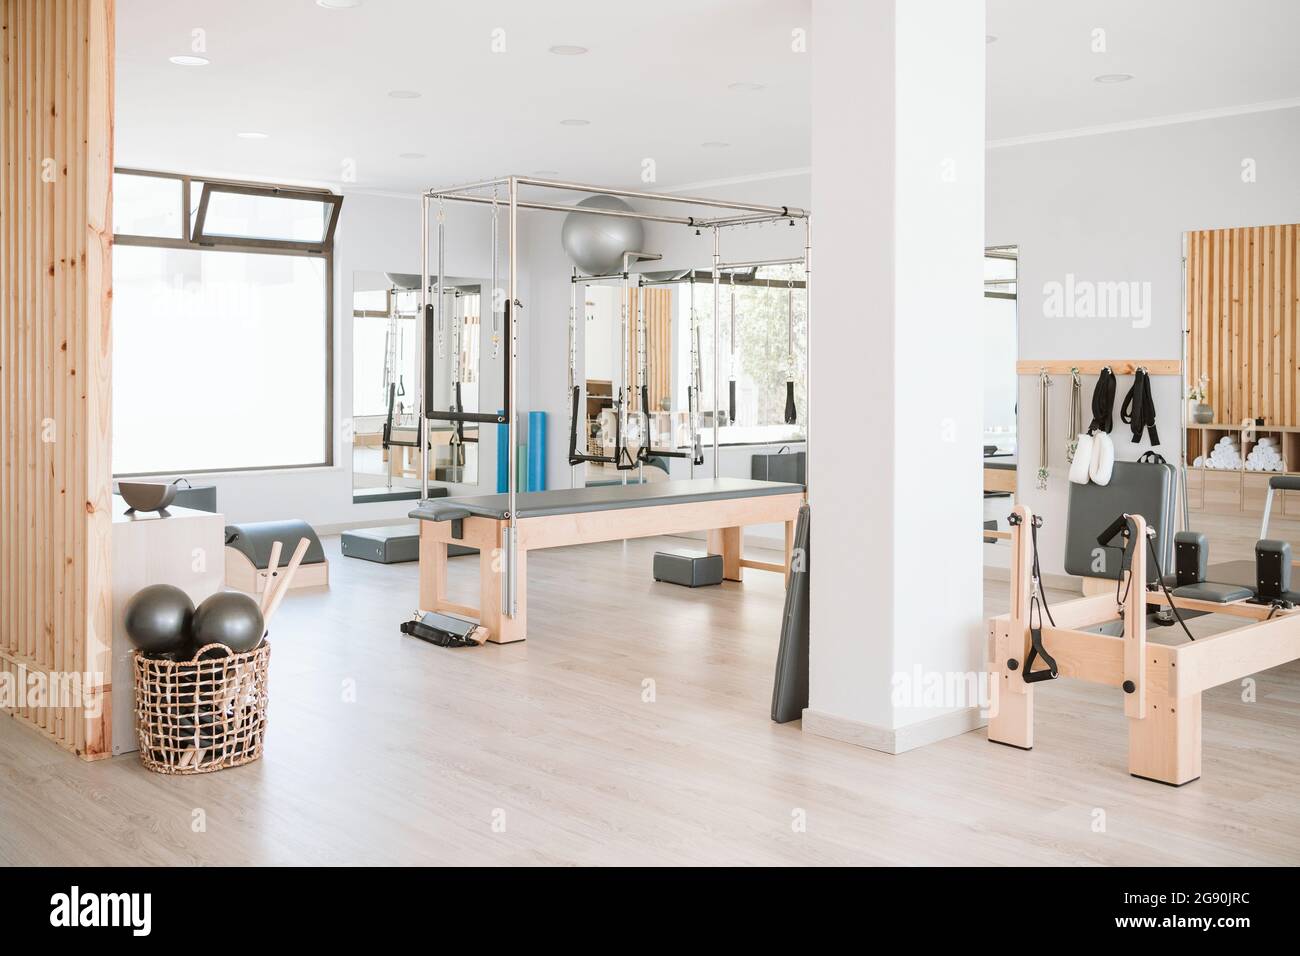 Pilates machine and exercise equipments in empty studio Stock Photo